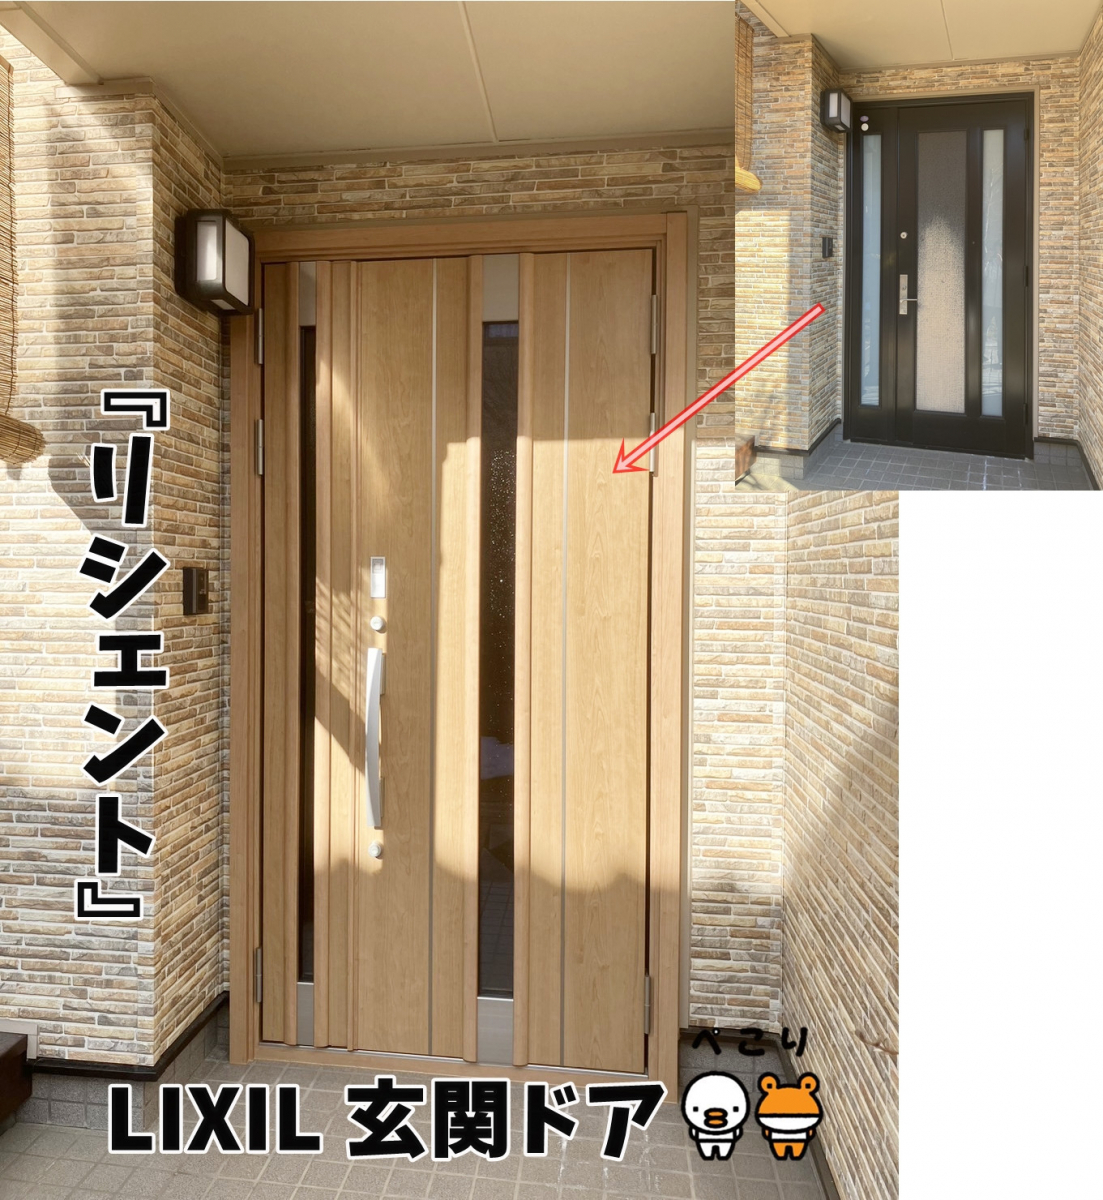 更埴トーヨー住器の外壁リフォームに伴い玄関も交換したいとのご要望(上田市)の施工後の写真2